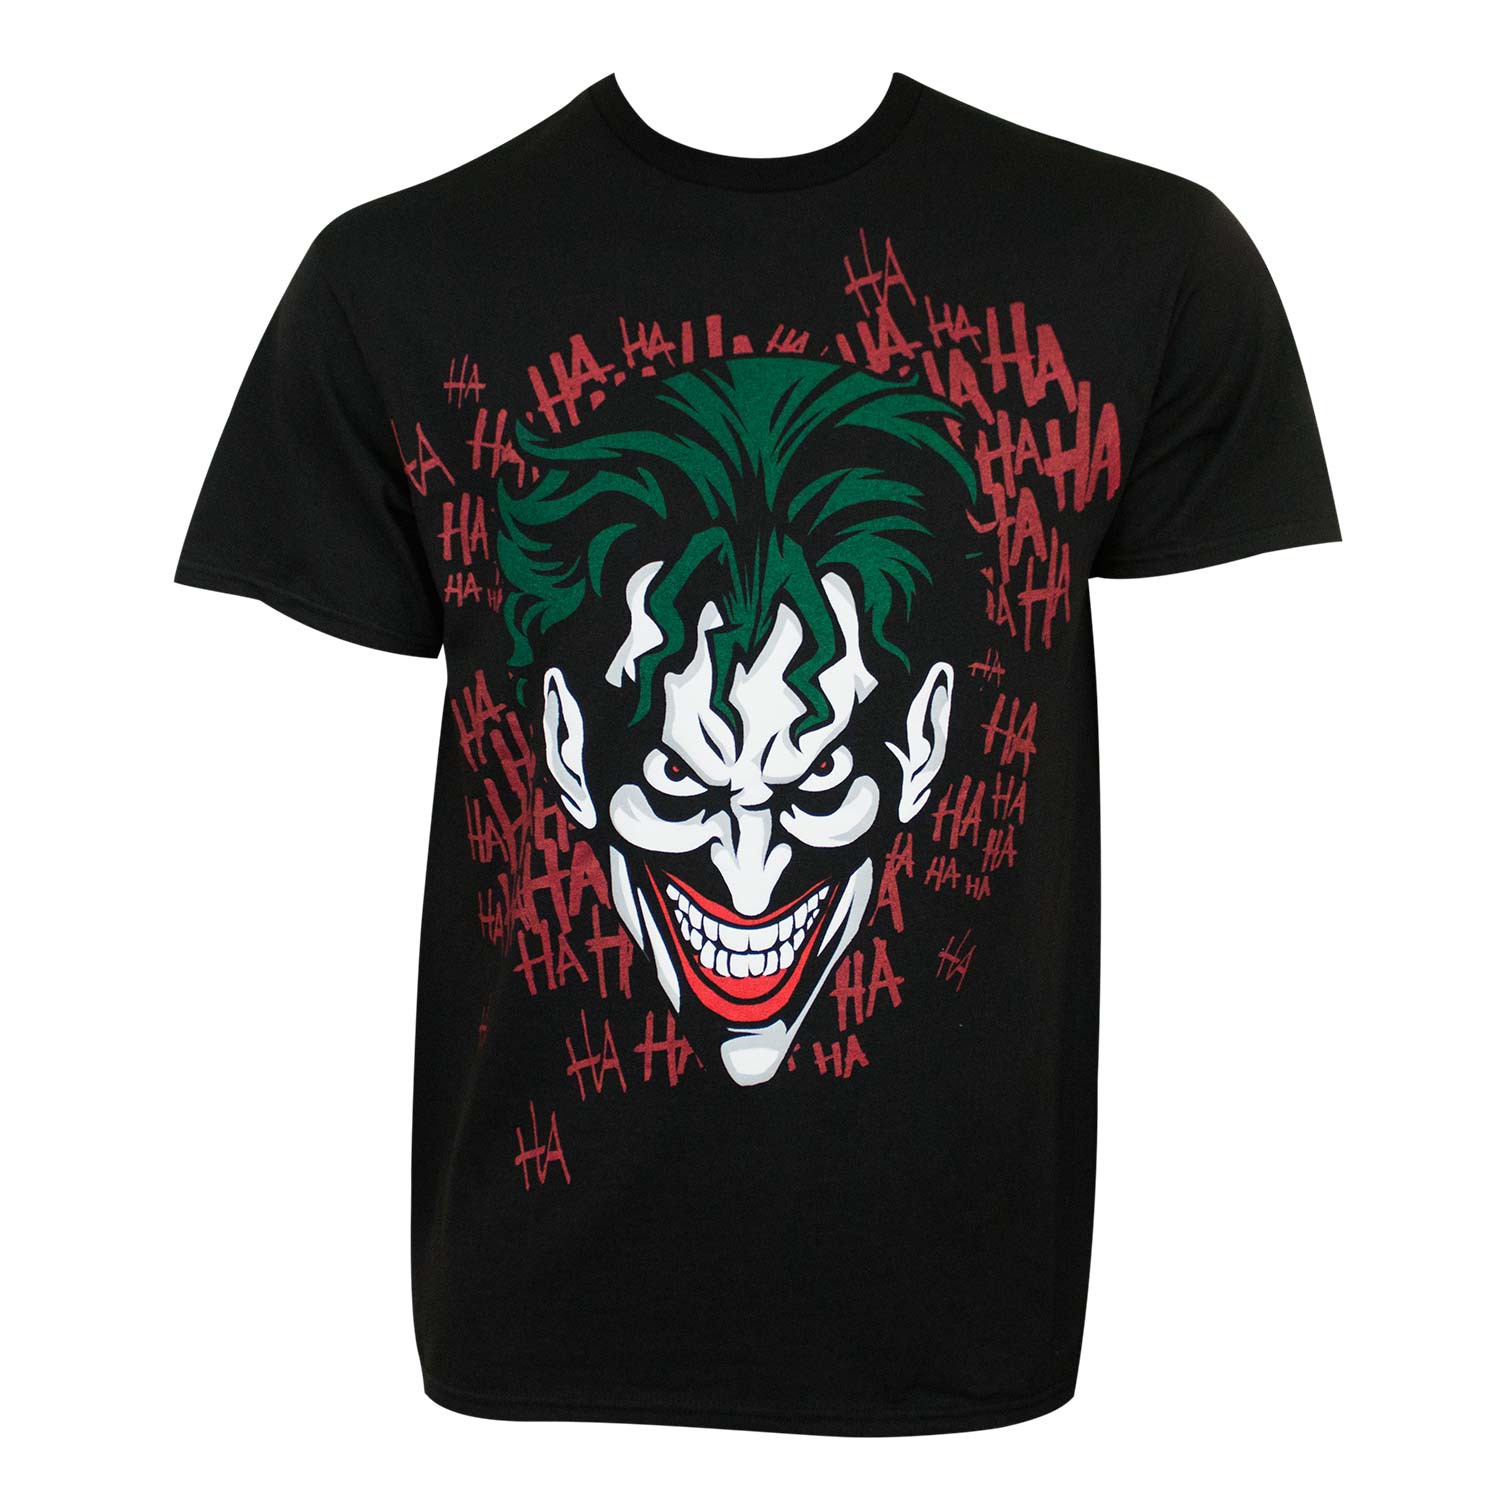 Joker HAHAHA Tee Shirt